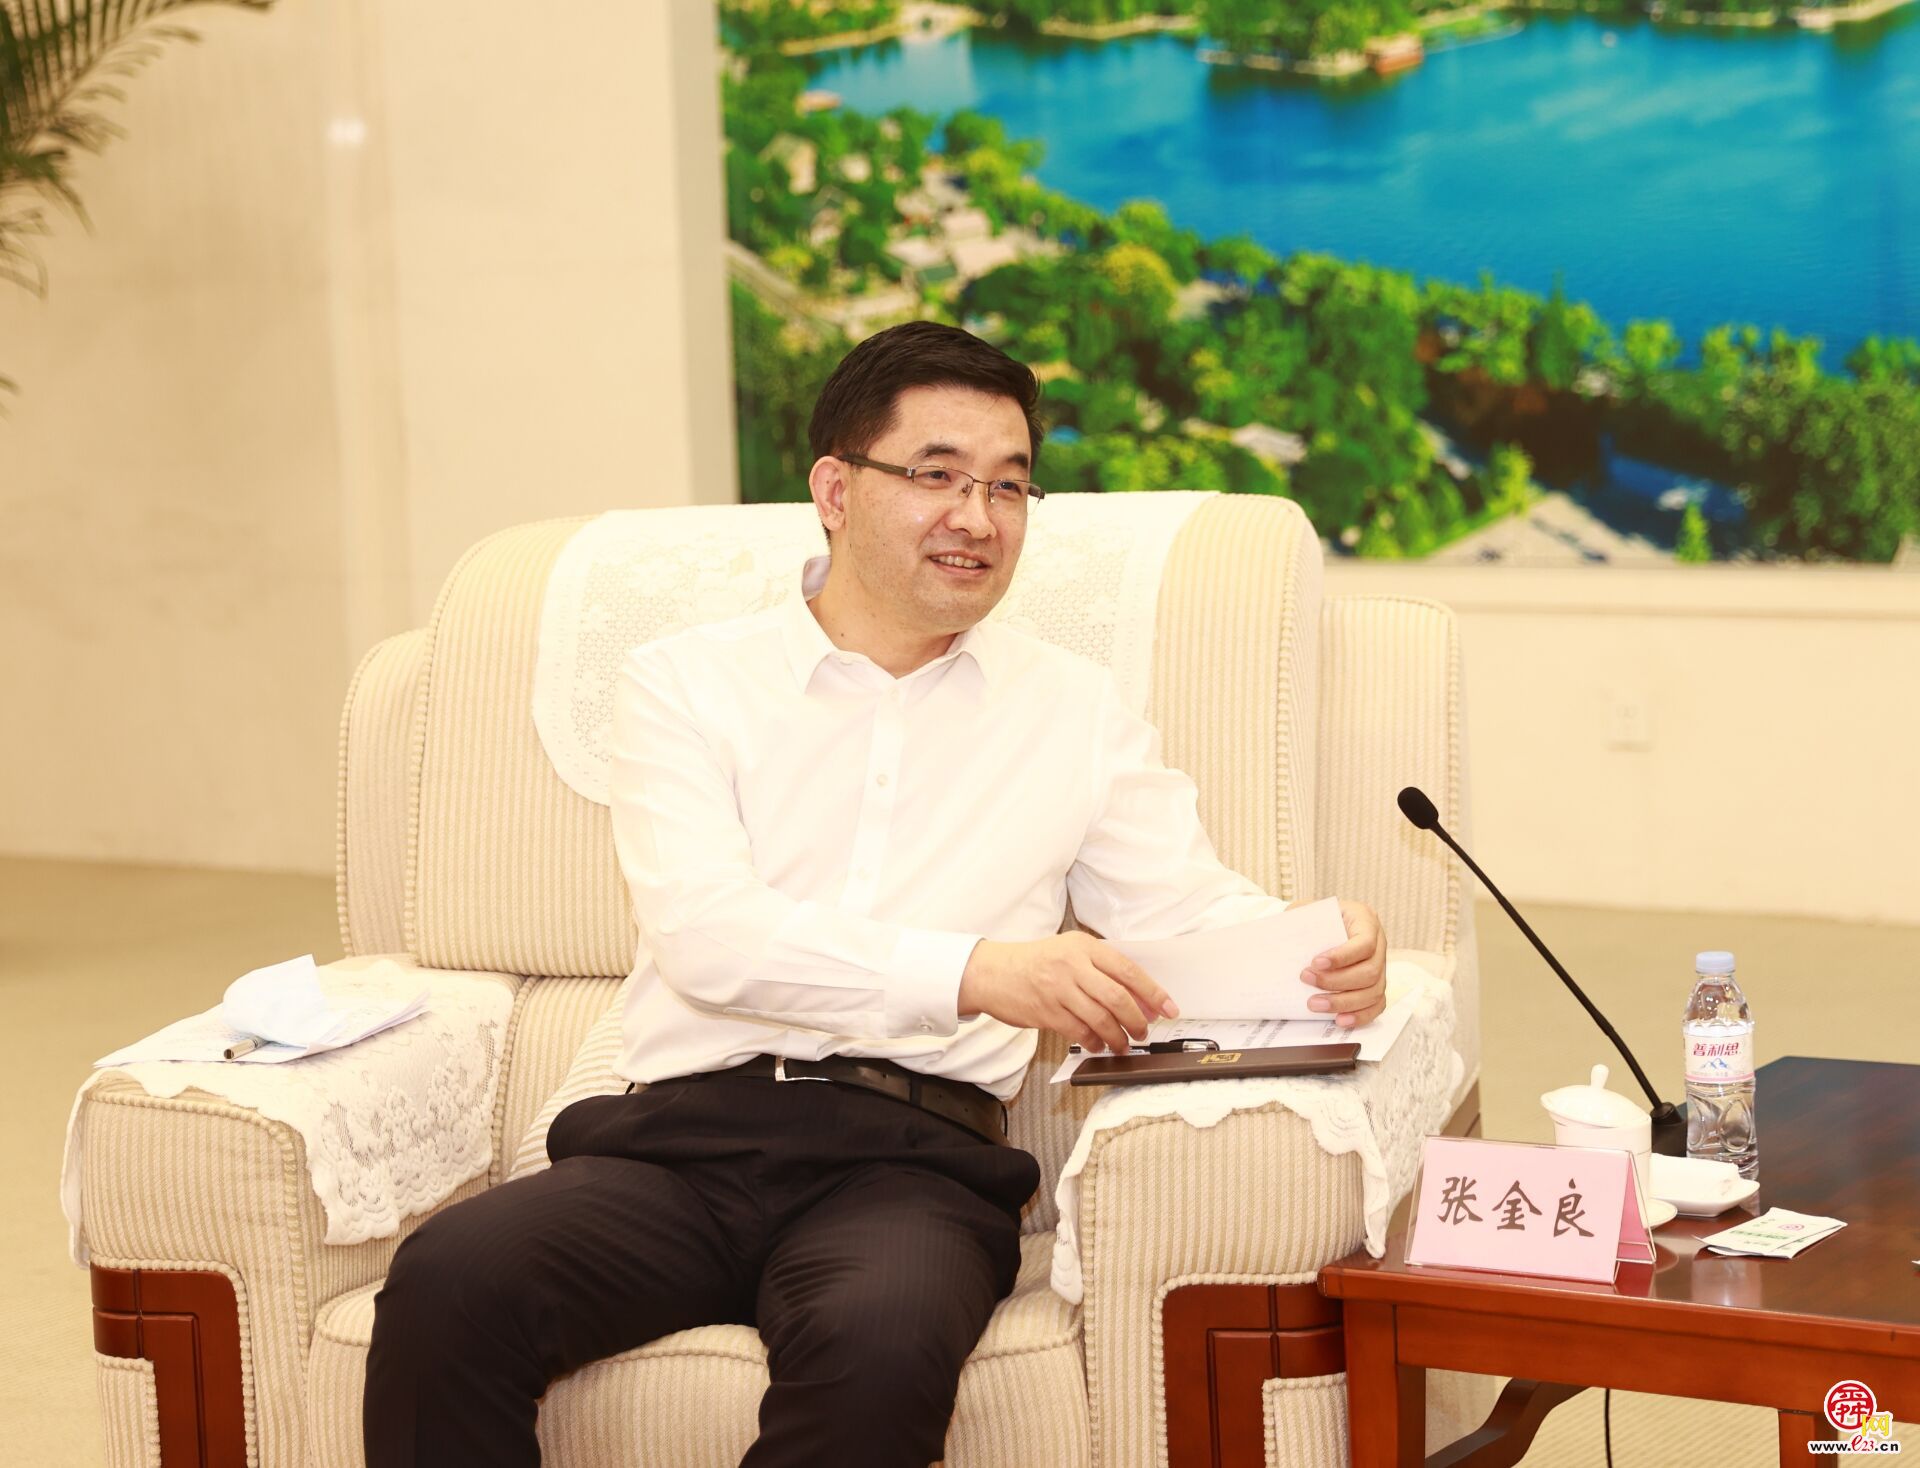 济南市政府与建行山东省分行签署战略合作协议刘强于海田会见张金良